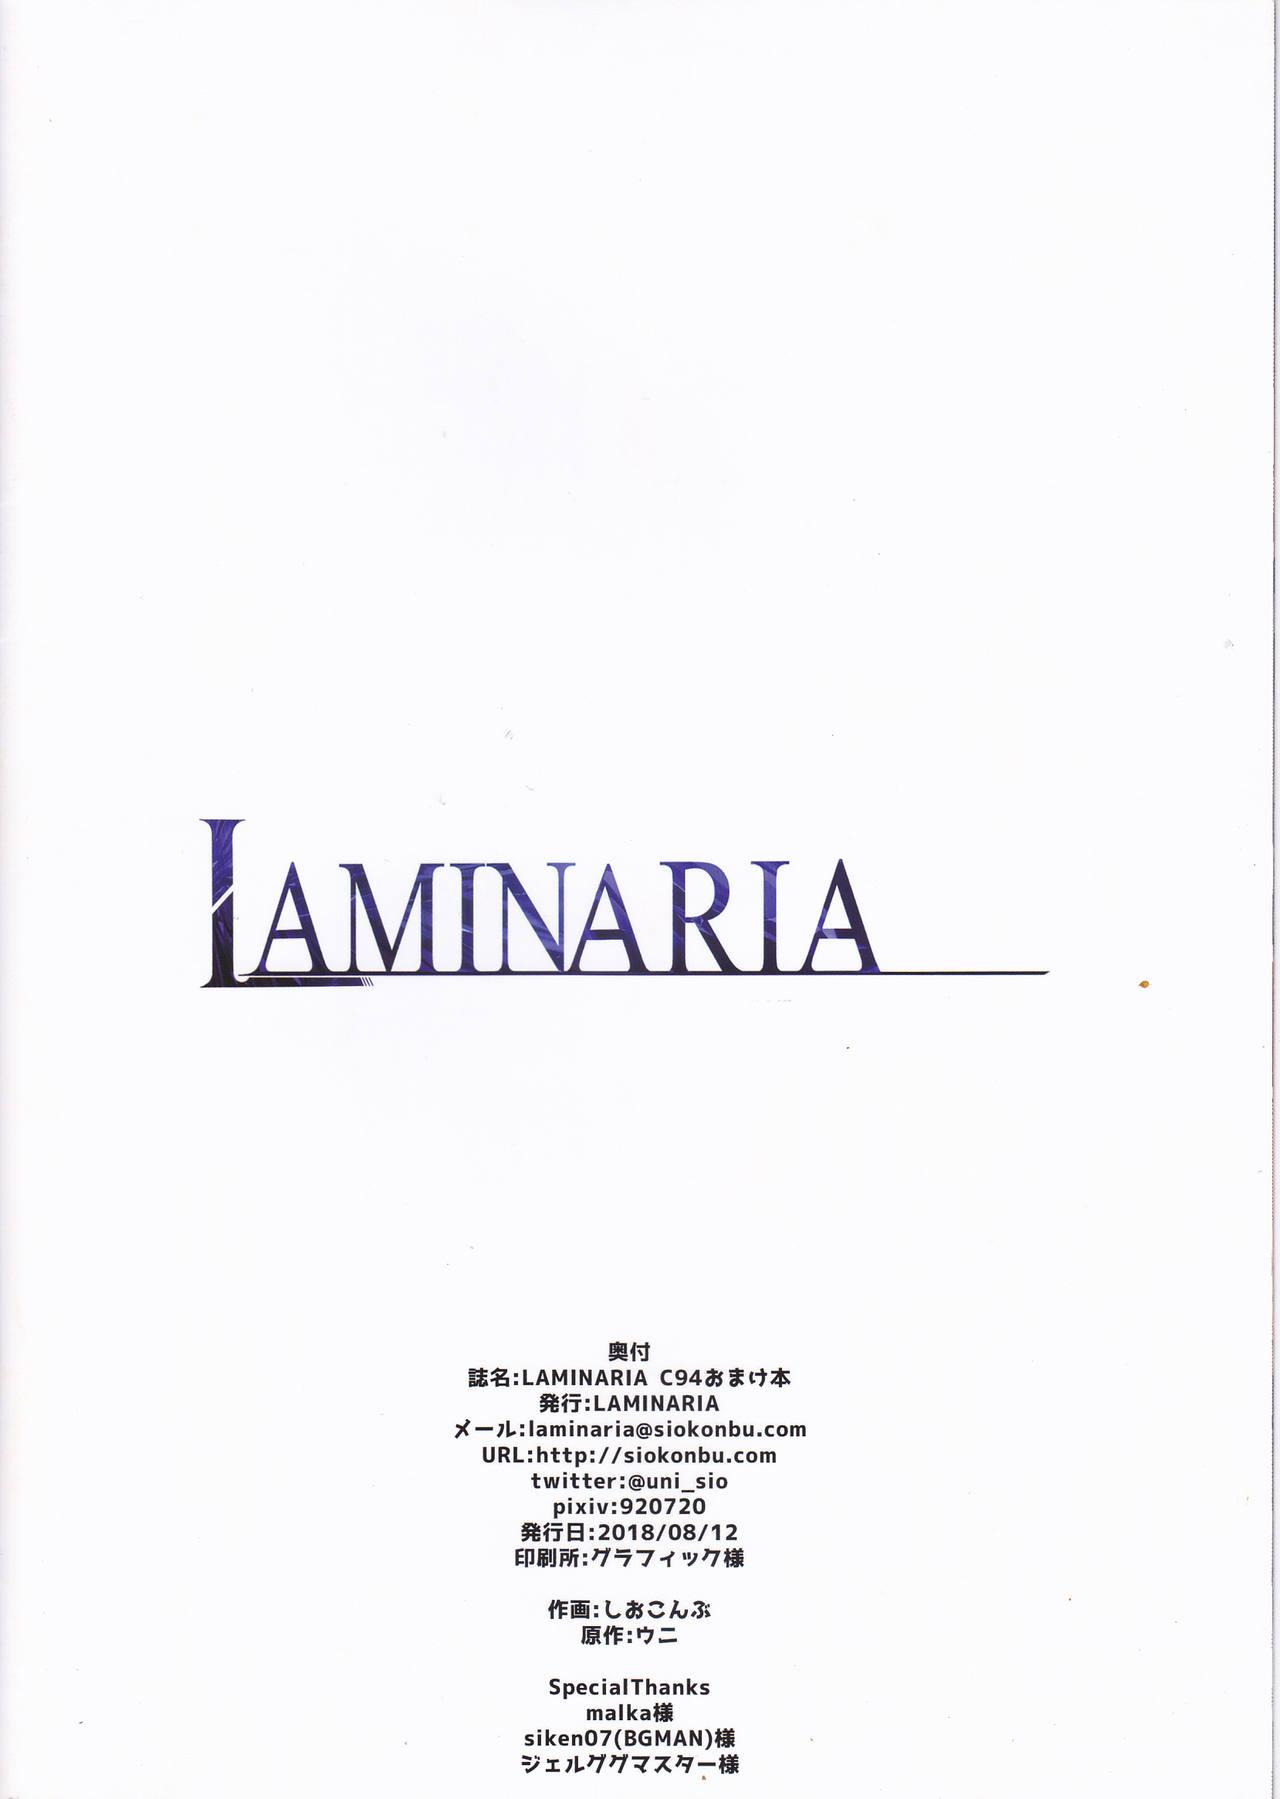 LAMINARIA C94 Omakebon 11